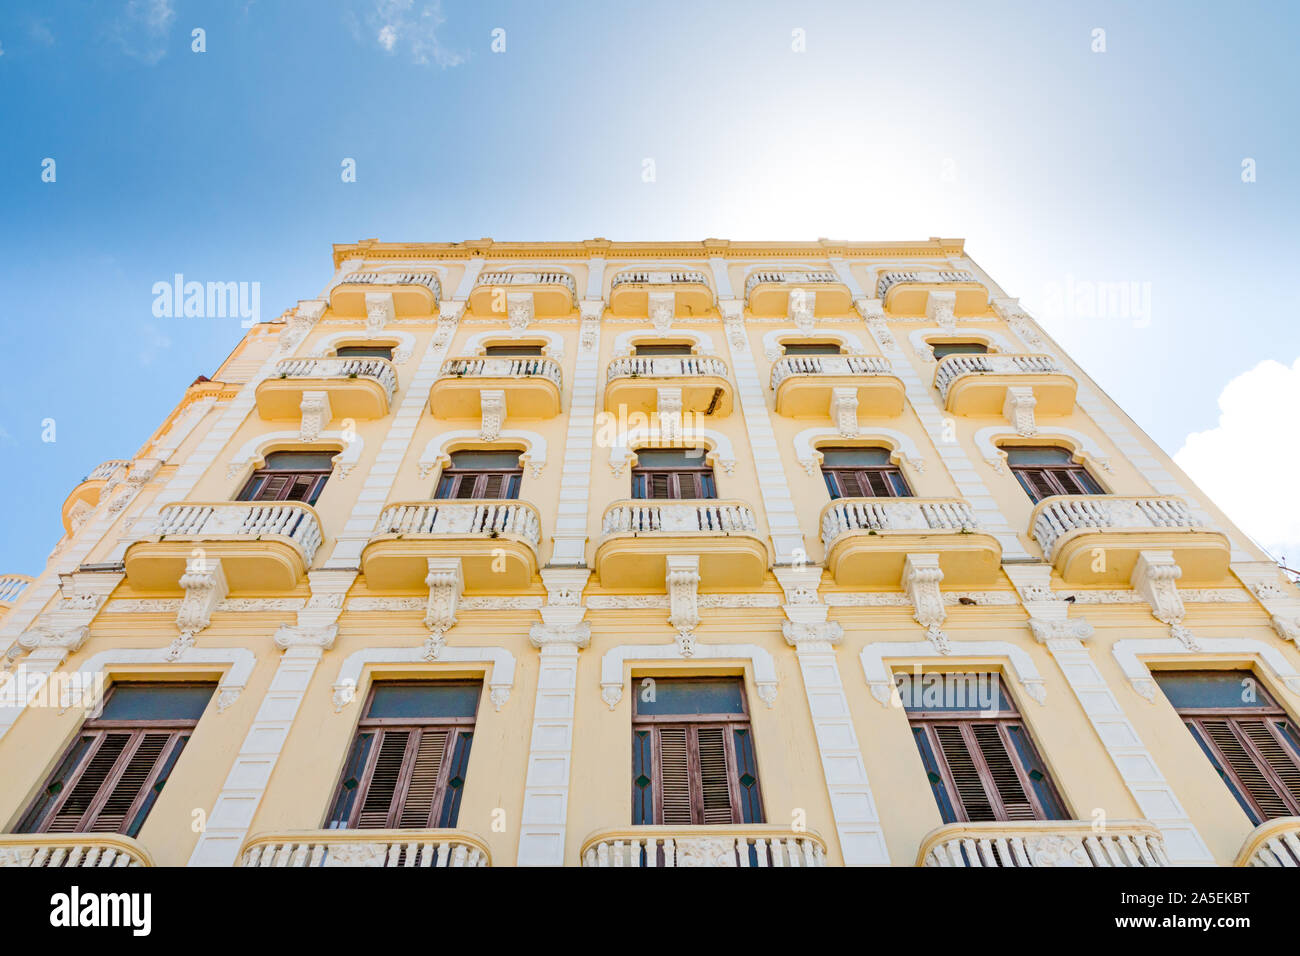 Facade of a yellow colonial building in Havana, Cuba. Stock Photo